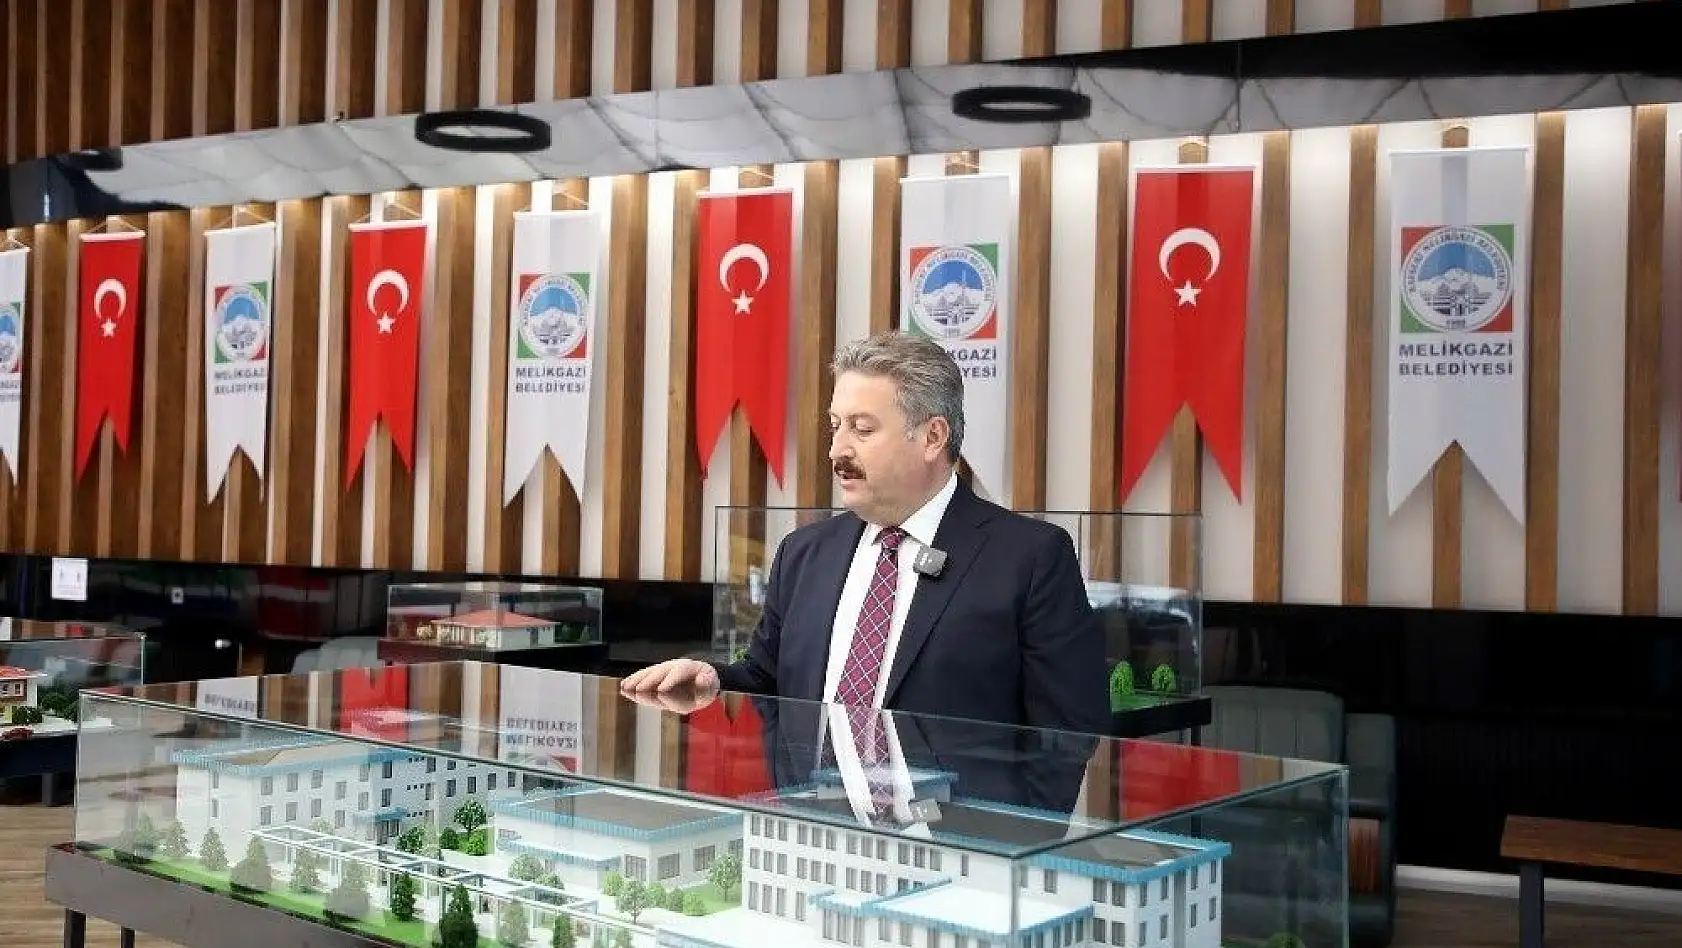 Palancıoğlu: Melikgazi'de projeler ardı ardına hayata geçiyor